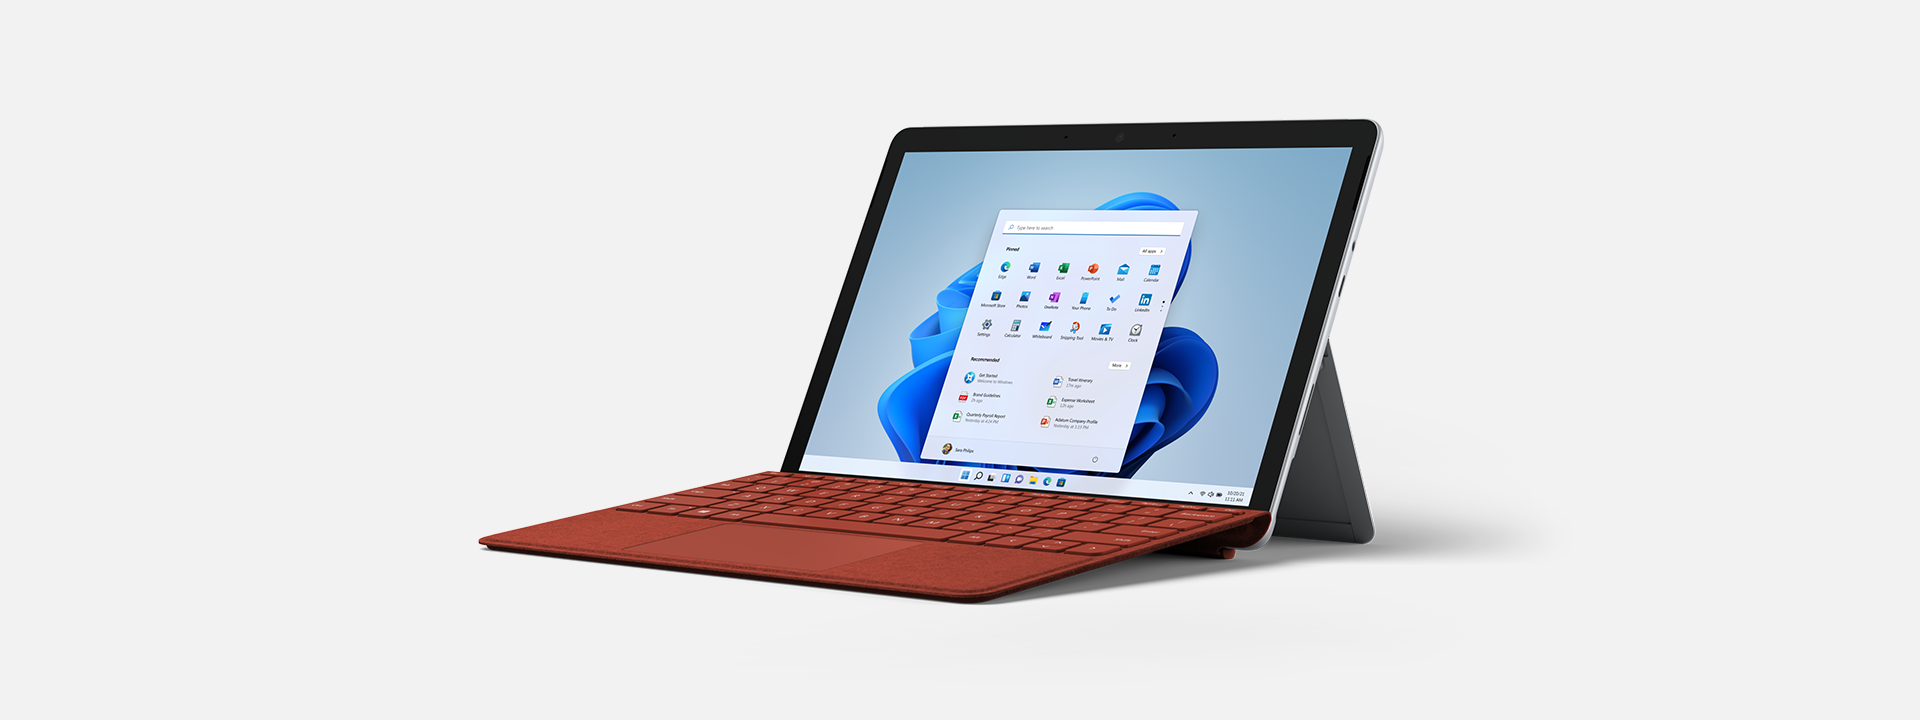 Jalustan tukema Surface Go 3 yrityksille -laite, josta näkyy näyttö ja näppäimistö.